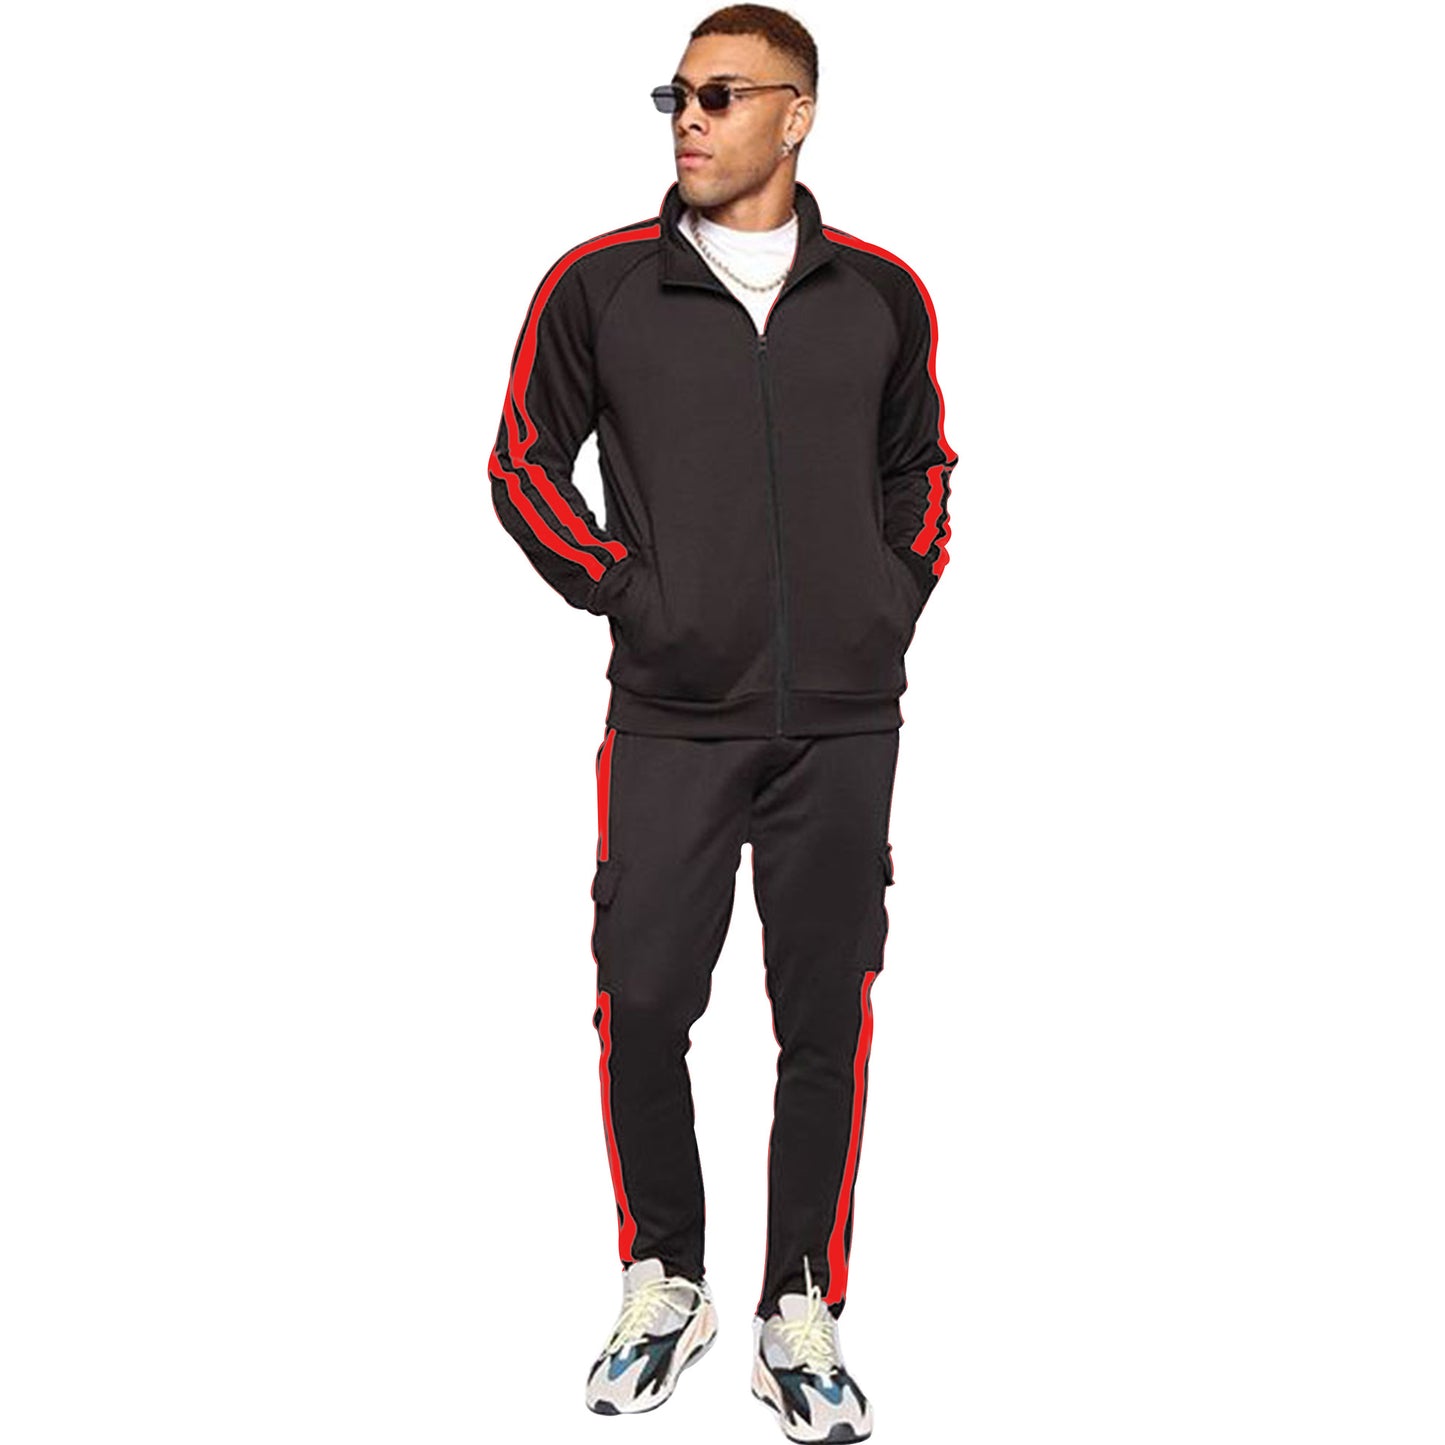 PDEP plus size 3XL high quality zip up wholesale custom men nylon tracksuit strap design jogging pants sweatsuit set for men